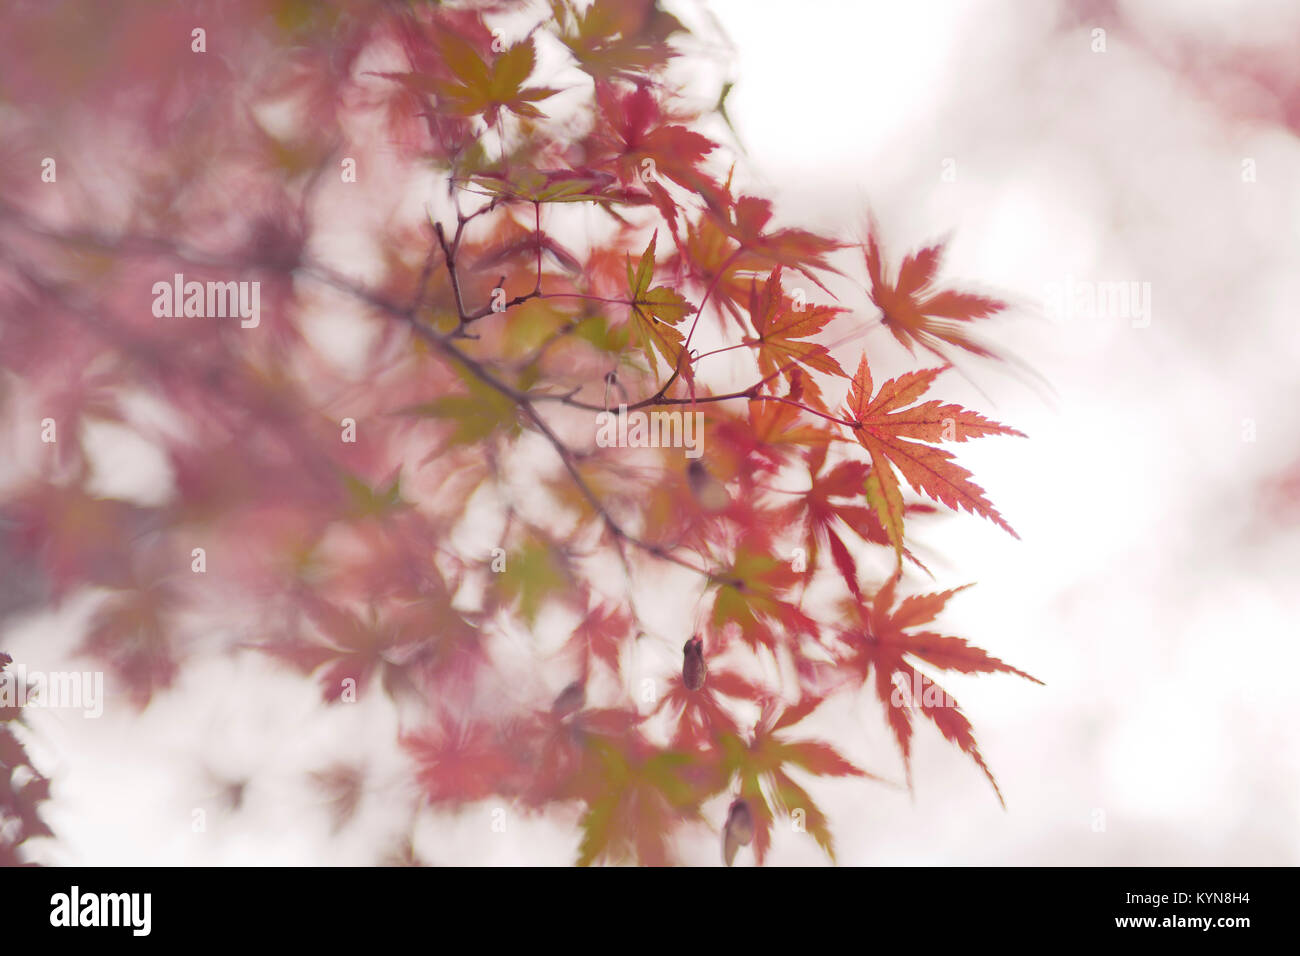 Licence et tirages sur MaximImages.com - belle clôture artistique de l'érable japonais, Acer palmatum, feuilles rouges en automne brume sur fond de brouillard blanc Banque D'Images